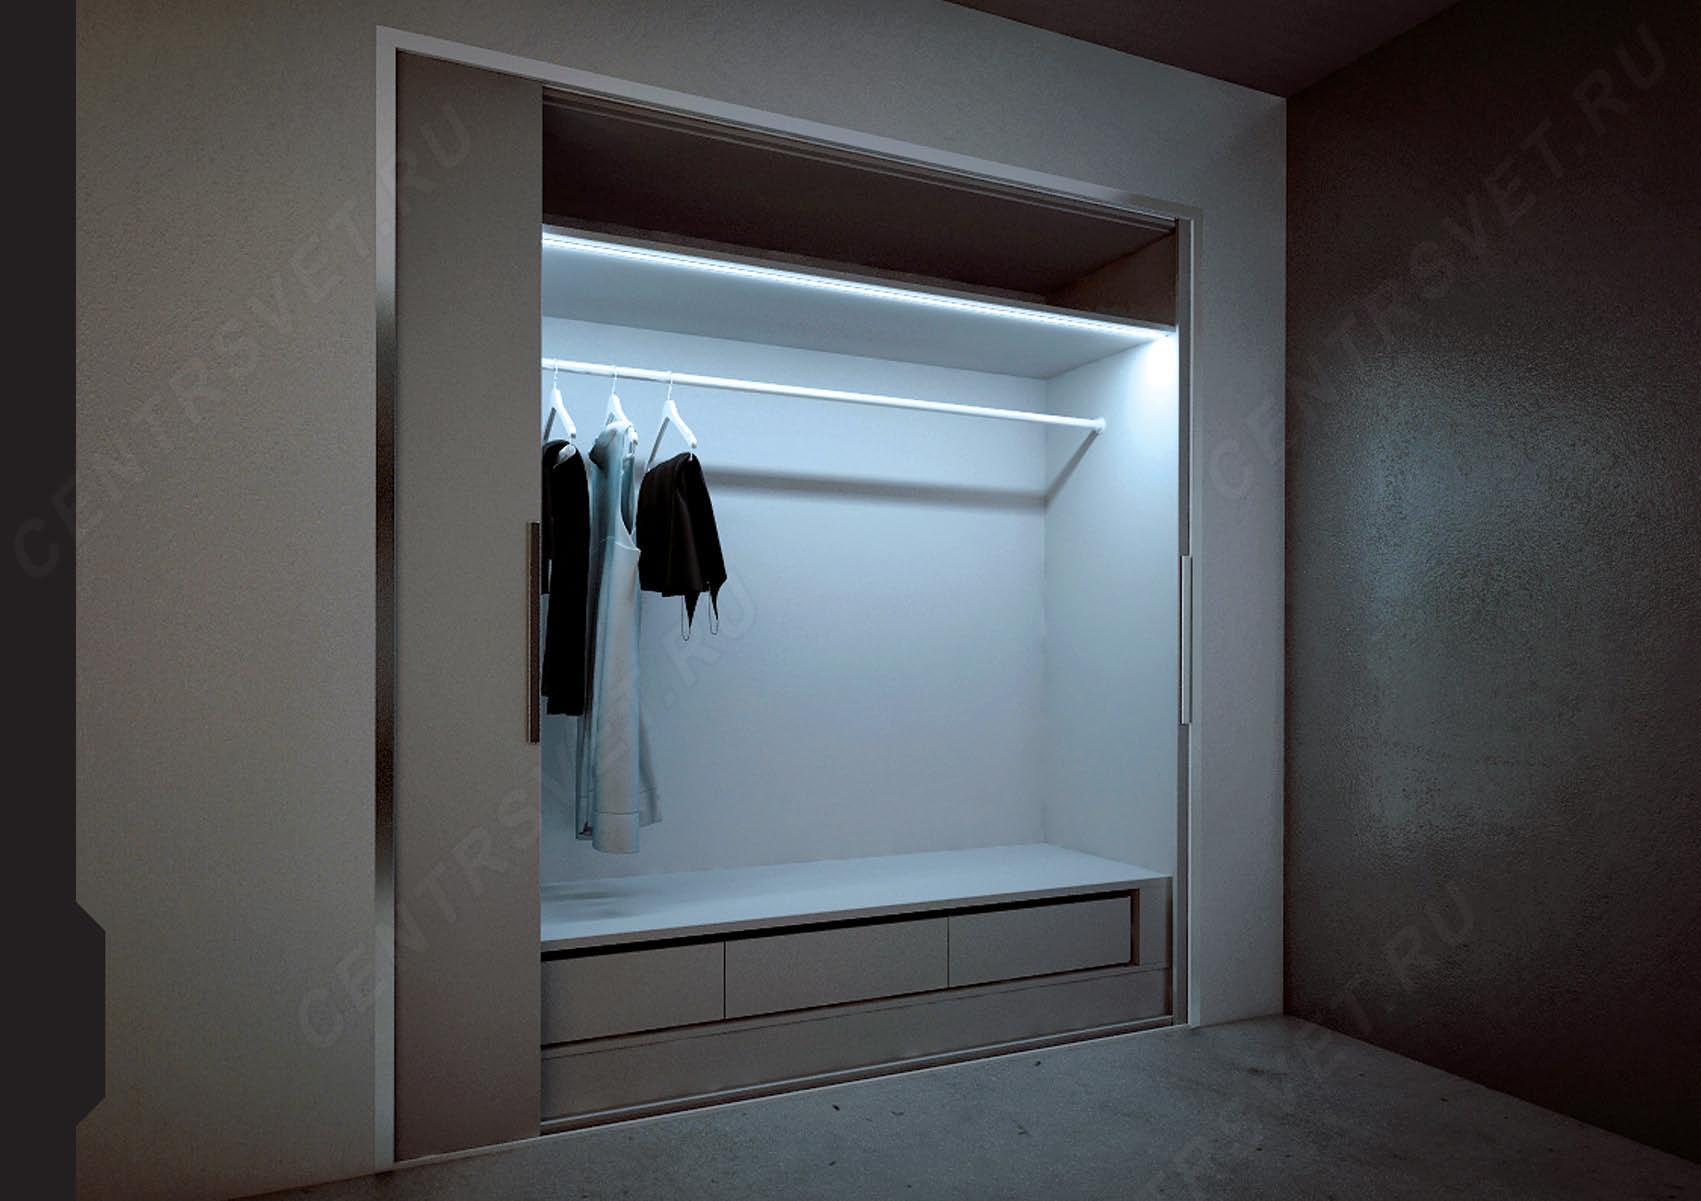 включение света в шкафу при открывании дверцы